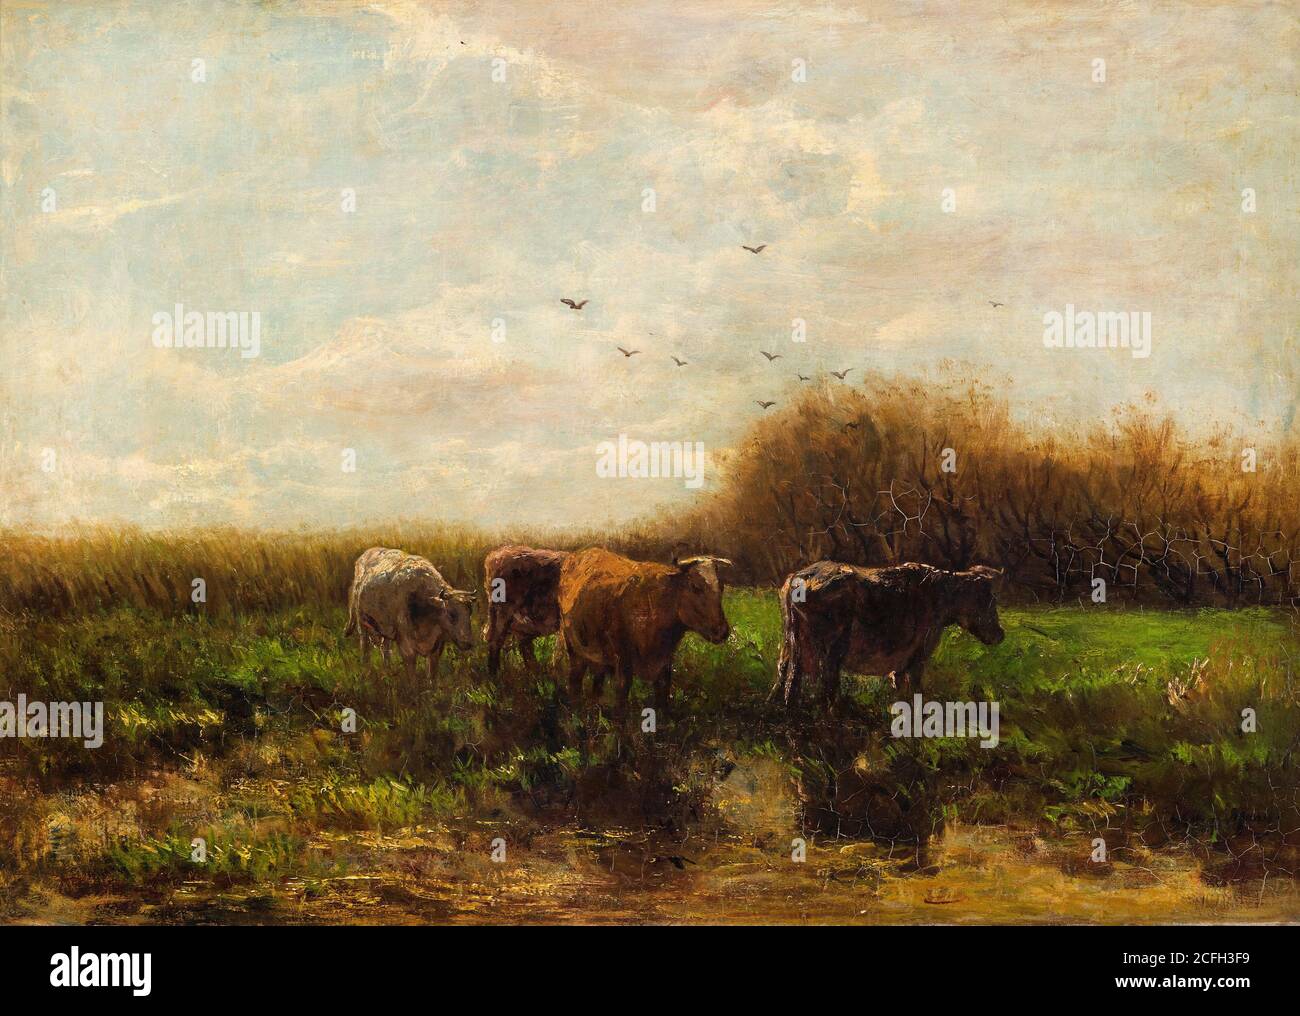 Willem Maris, mucche alla sera, circa 1859-1910, olio su tela, Gemeentemuseum Den Haag, l'Aia, Paesi Bassi. Foto Stock